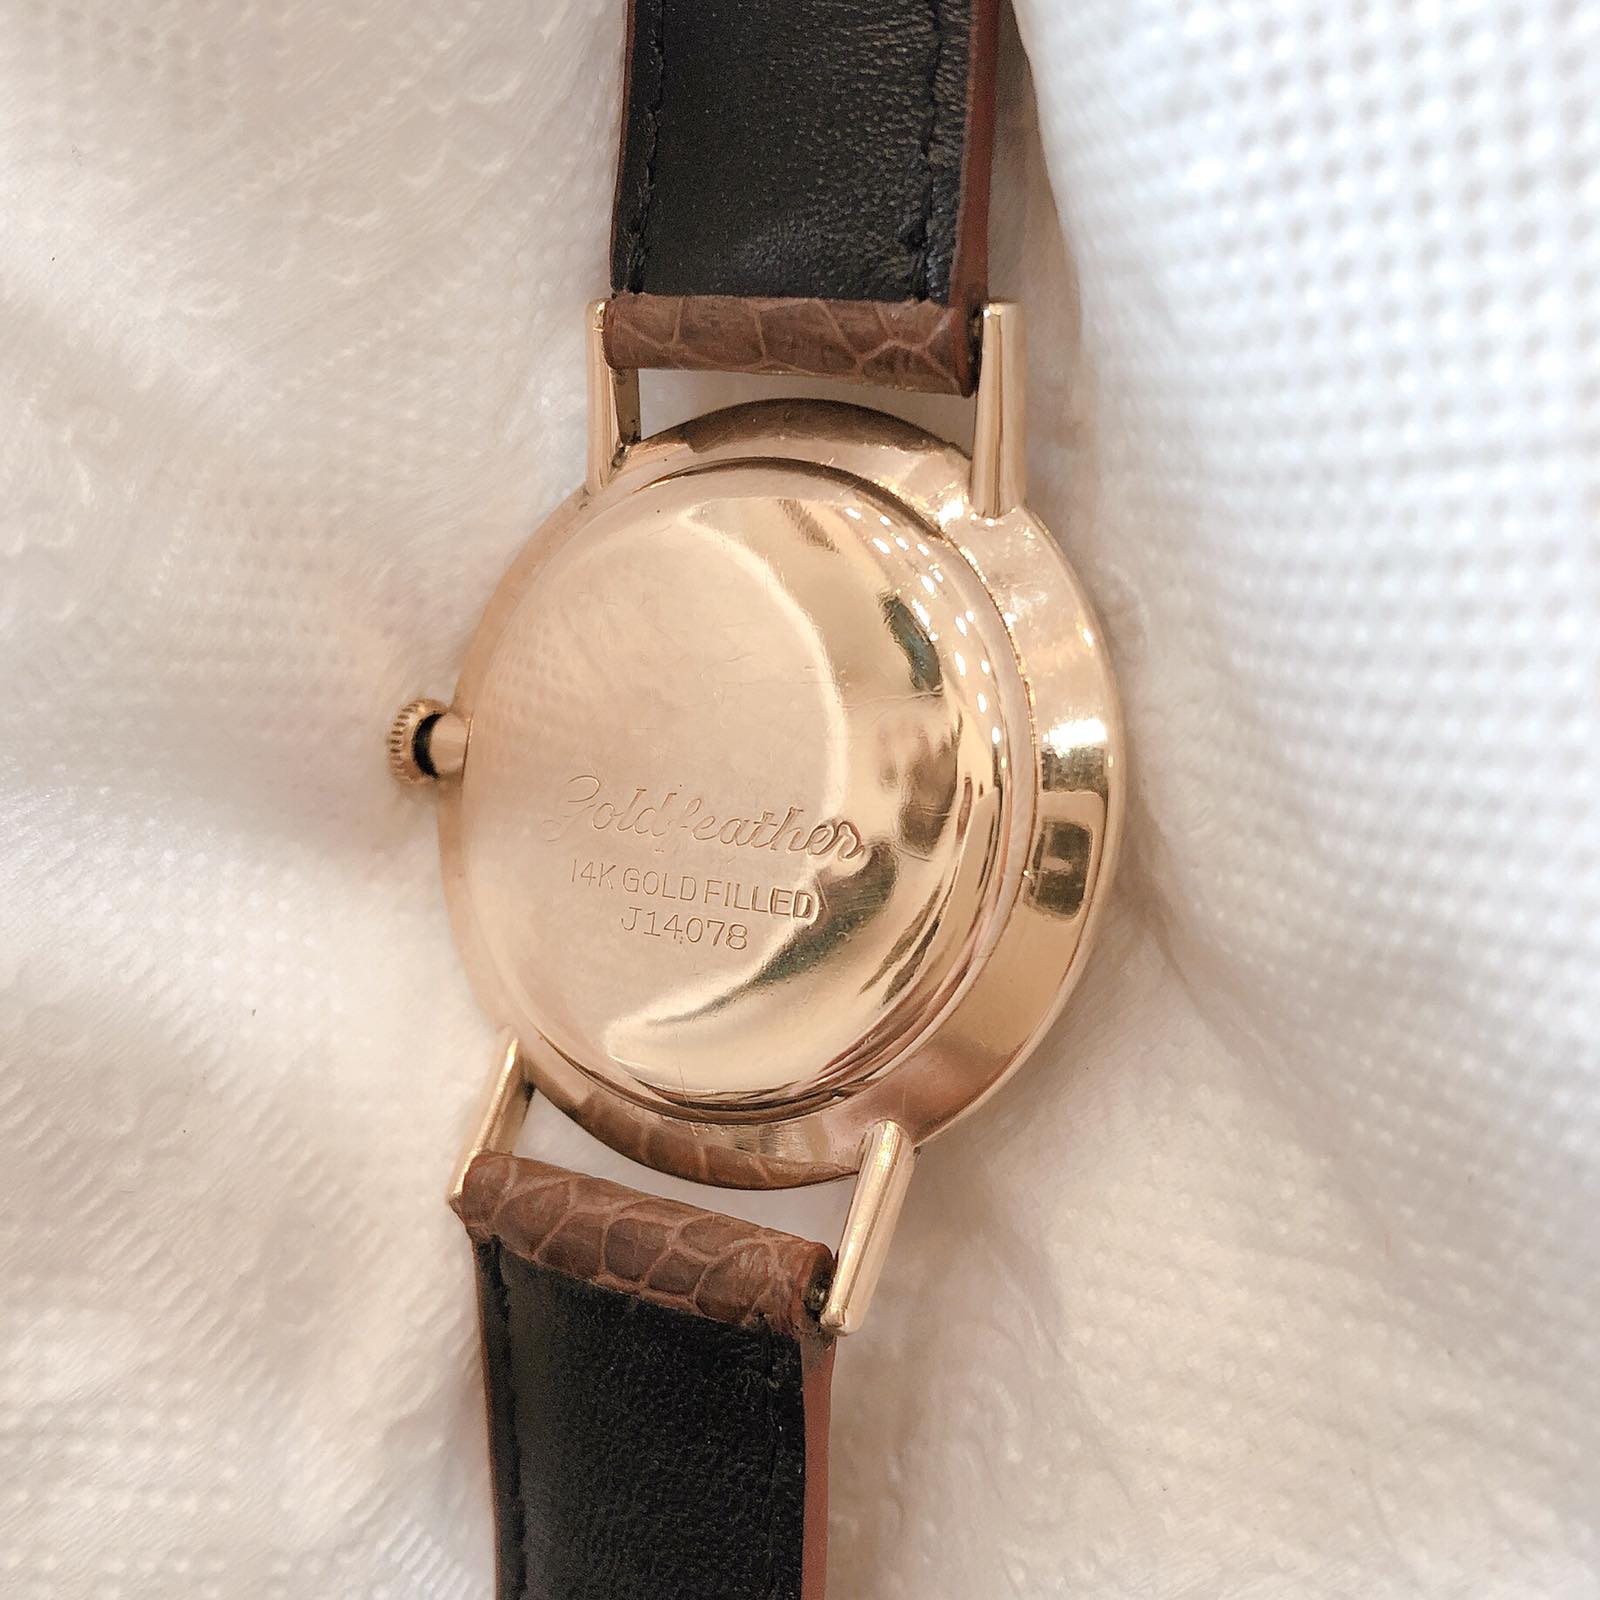 Đồng hồ cổ Seiko Mặt Phật bọc vàng 14k goldfilled lên dây chính hãng nhật 